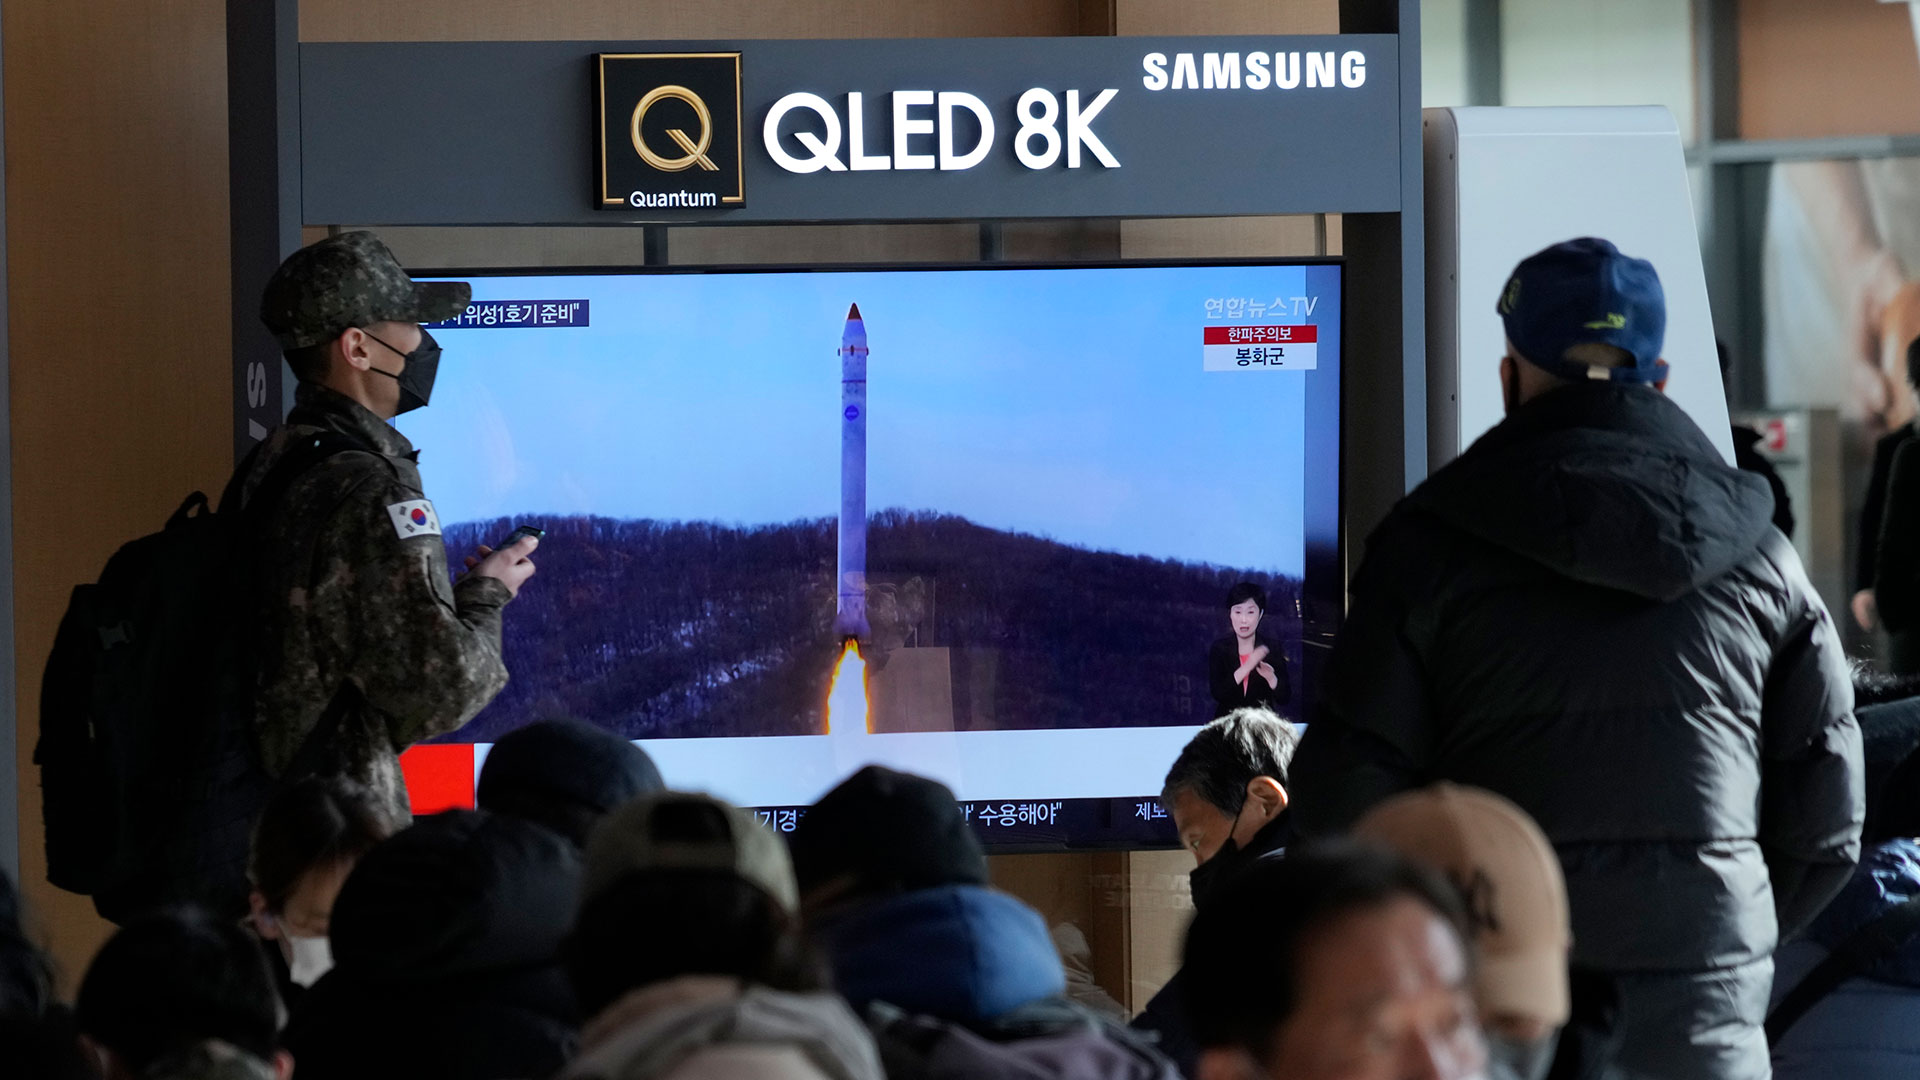 Una pantalla de televisión muestra una imagen del cohete de Corea del Norte con el satélite de prueba durante un programa de noticias en la Estación de Ferrocarril de Seúl, en Seúl, Corea del Sur, el lunes 19 de diciembre de 2022. Corea del Norte dijo el lunes que disparó un satélite de prueba en una importante final. -etapa de prueba para el desarrollo de su primer satélite espía, una capacidad militar clave codiciada por su líder Kim Jong Un junto con otros sistemas de armas de alta tecnología. (Foto AP/Ahn Young-joon)

